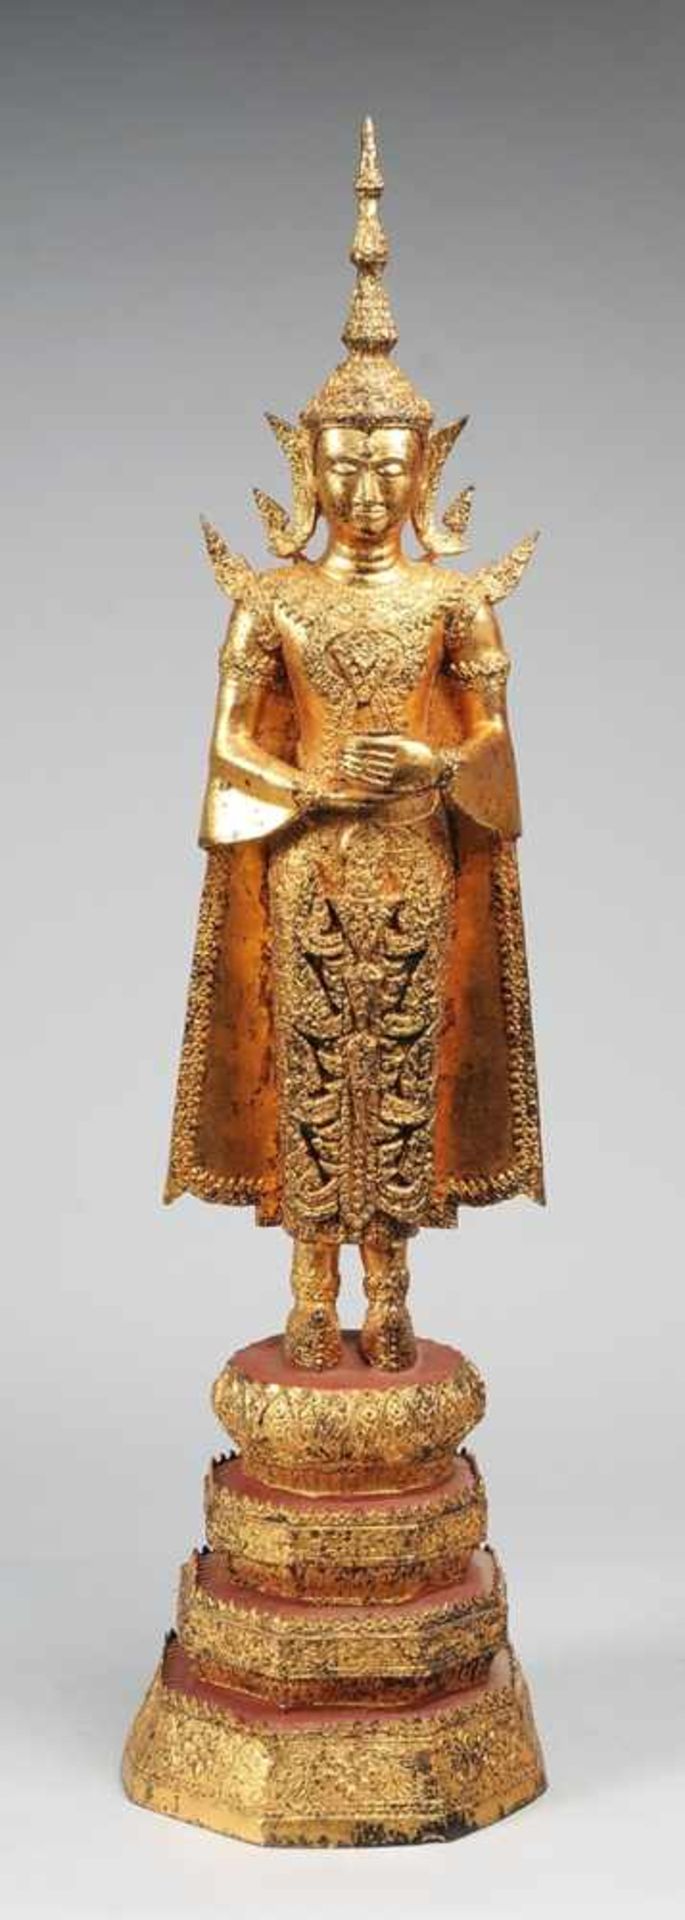 Große Figur des Buddha Shakyamuni Bronze, part. rot gefasst u. vergoldet. Auf mehrstufigem hohem